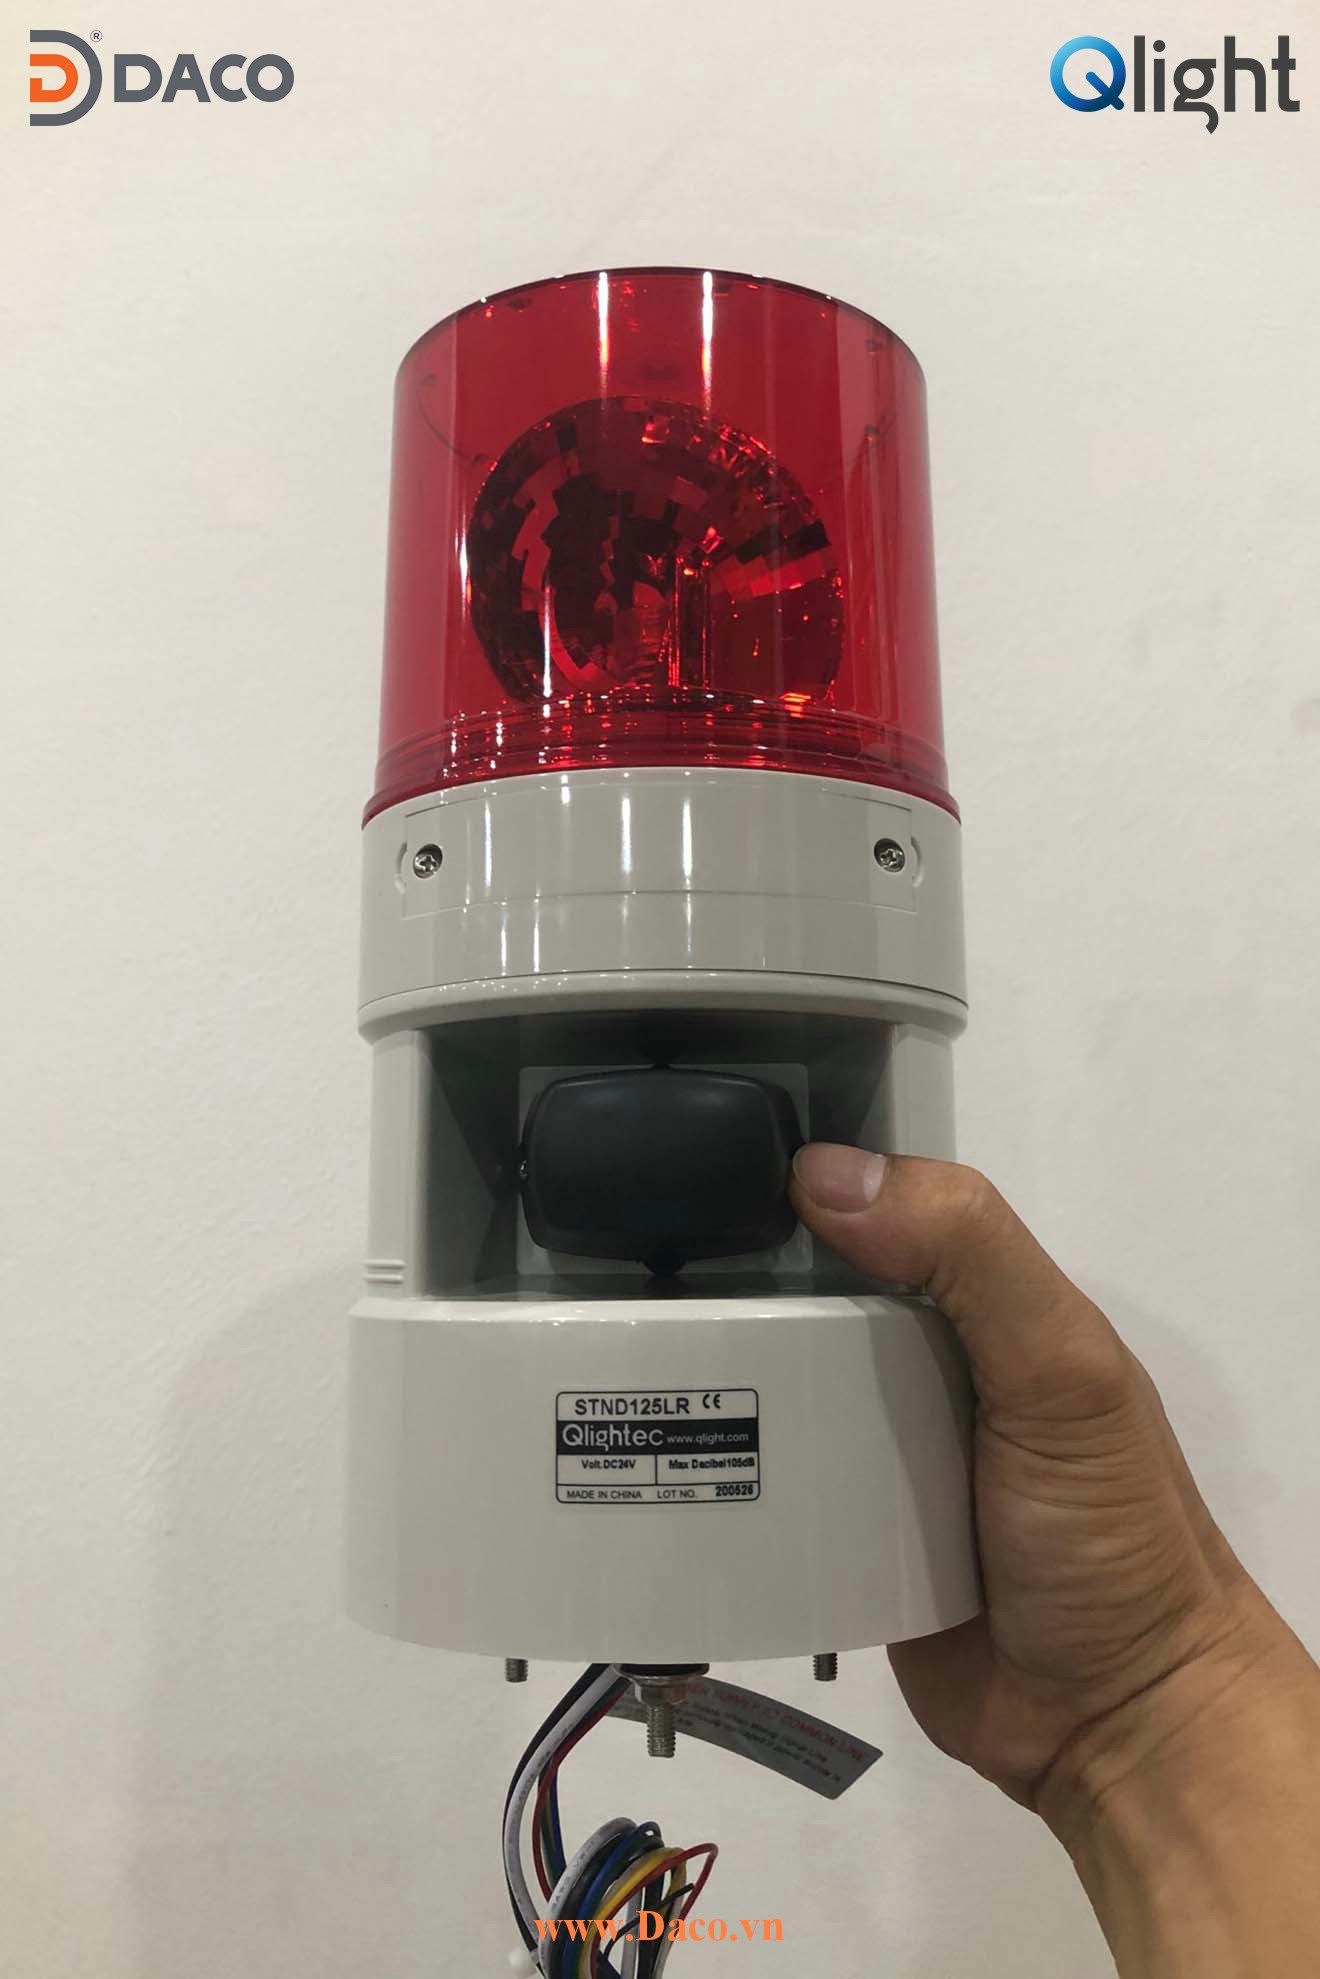 STND125R-24-R Hình ảnh thực tế Đèn quay báo hiệu bóng sợi đốt có loa ghi âm phát nhạc MP3 Qlight Hàn Quốc: Điện áp 24VDC